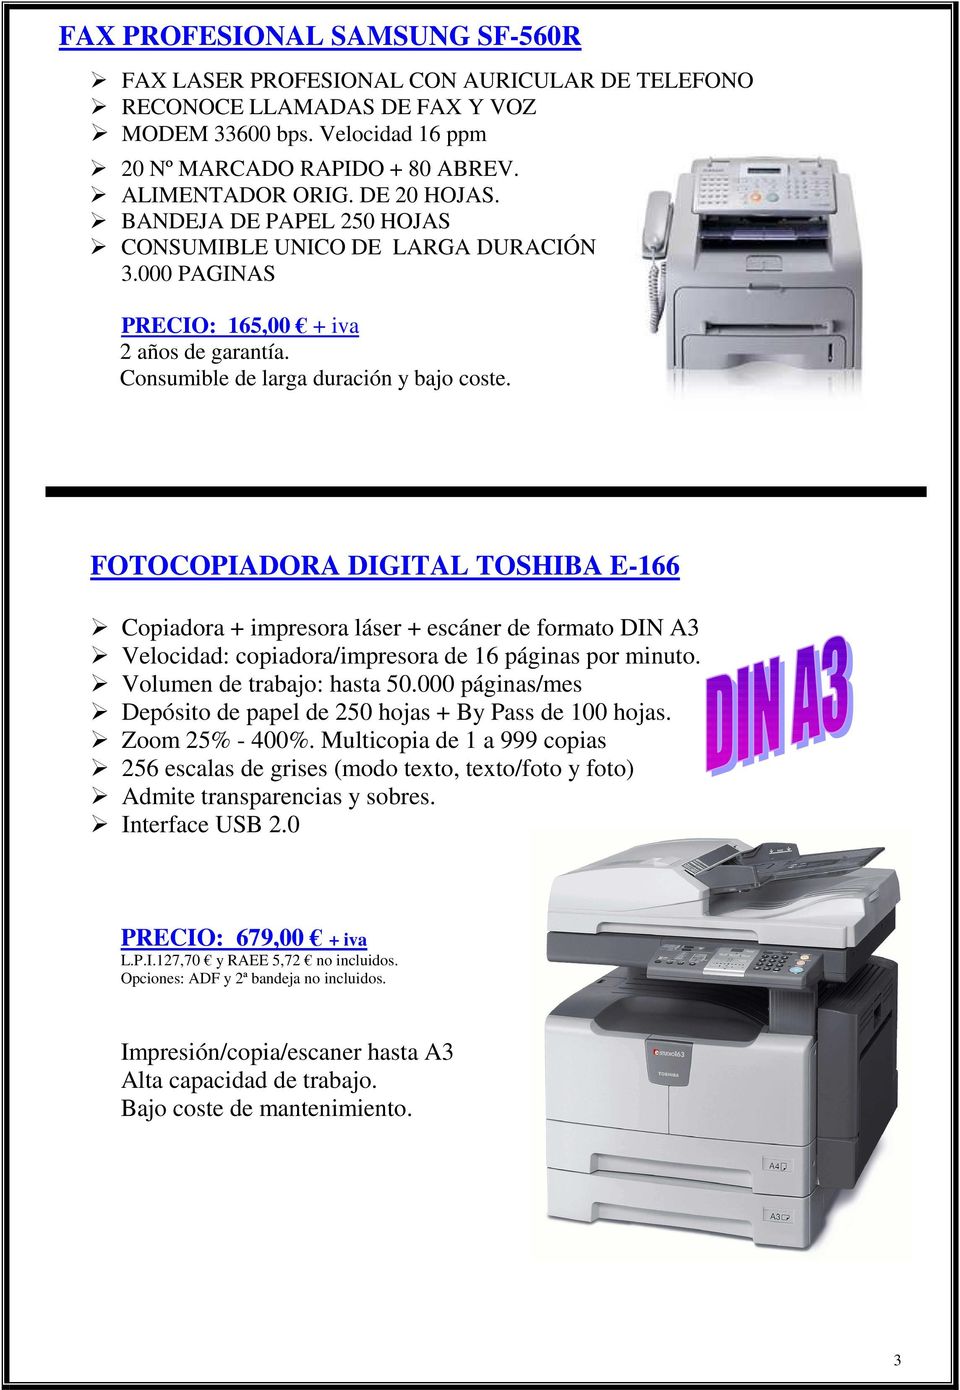 FOTOCOPIADORA DIGITAL TOSHIBA E-166 Copiadora + impresora láser + escáner de formato DIN A3 Velocidad: copiadora/impresora de 16 páginas por minuto. Volumen de trabajo: hasta 50.